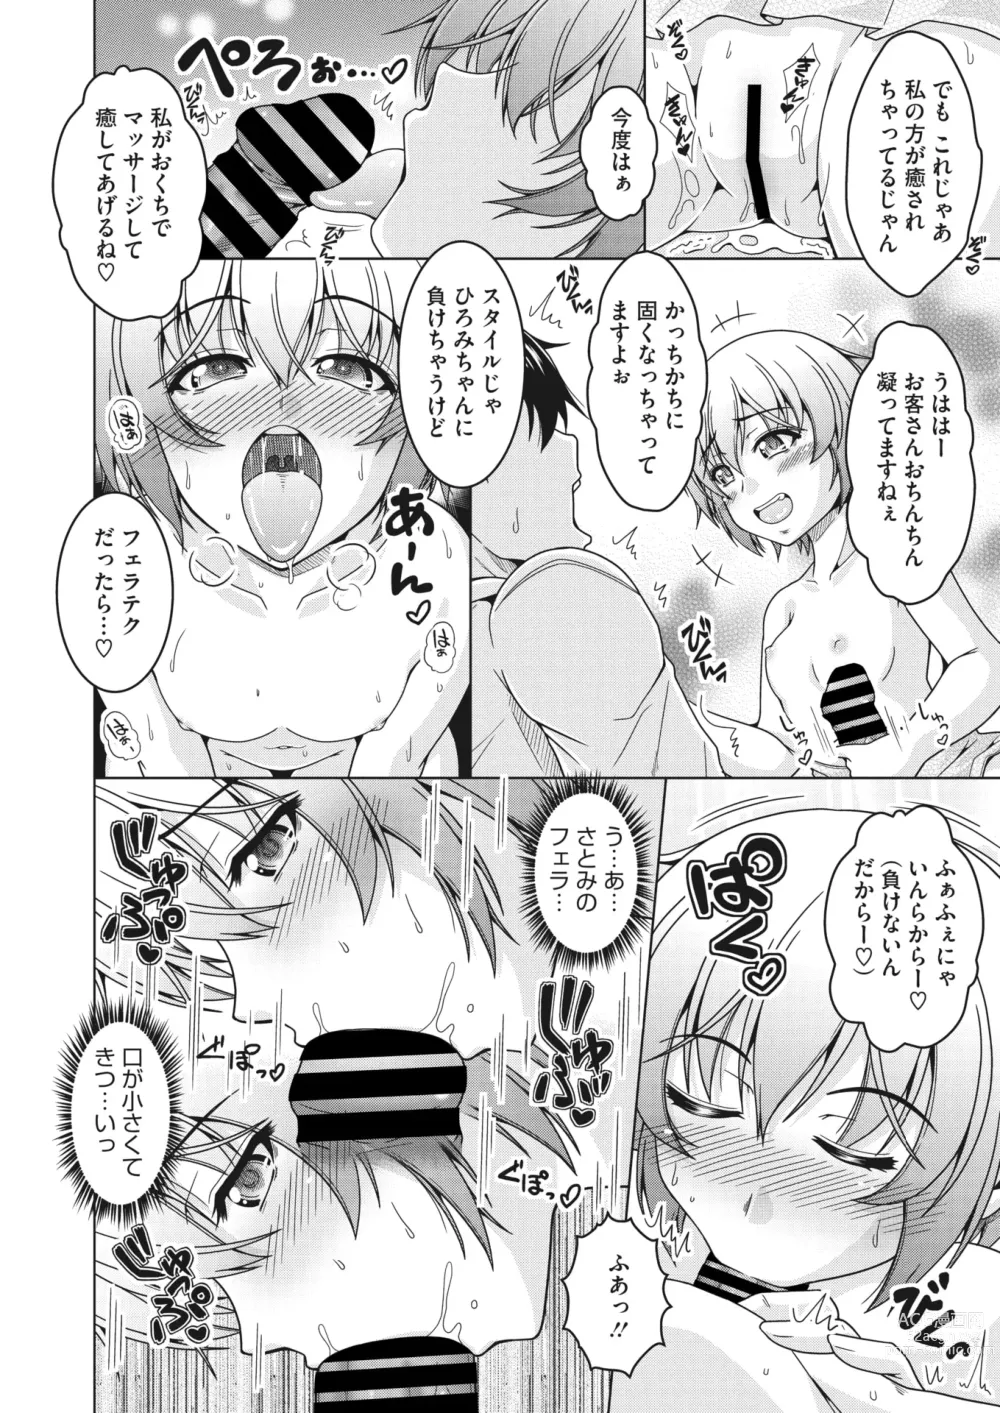 Page 267 of manga COMIC HOTMiLK Koime Vol. 43